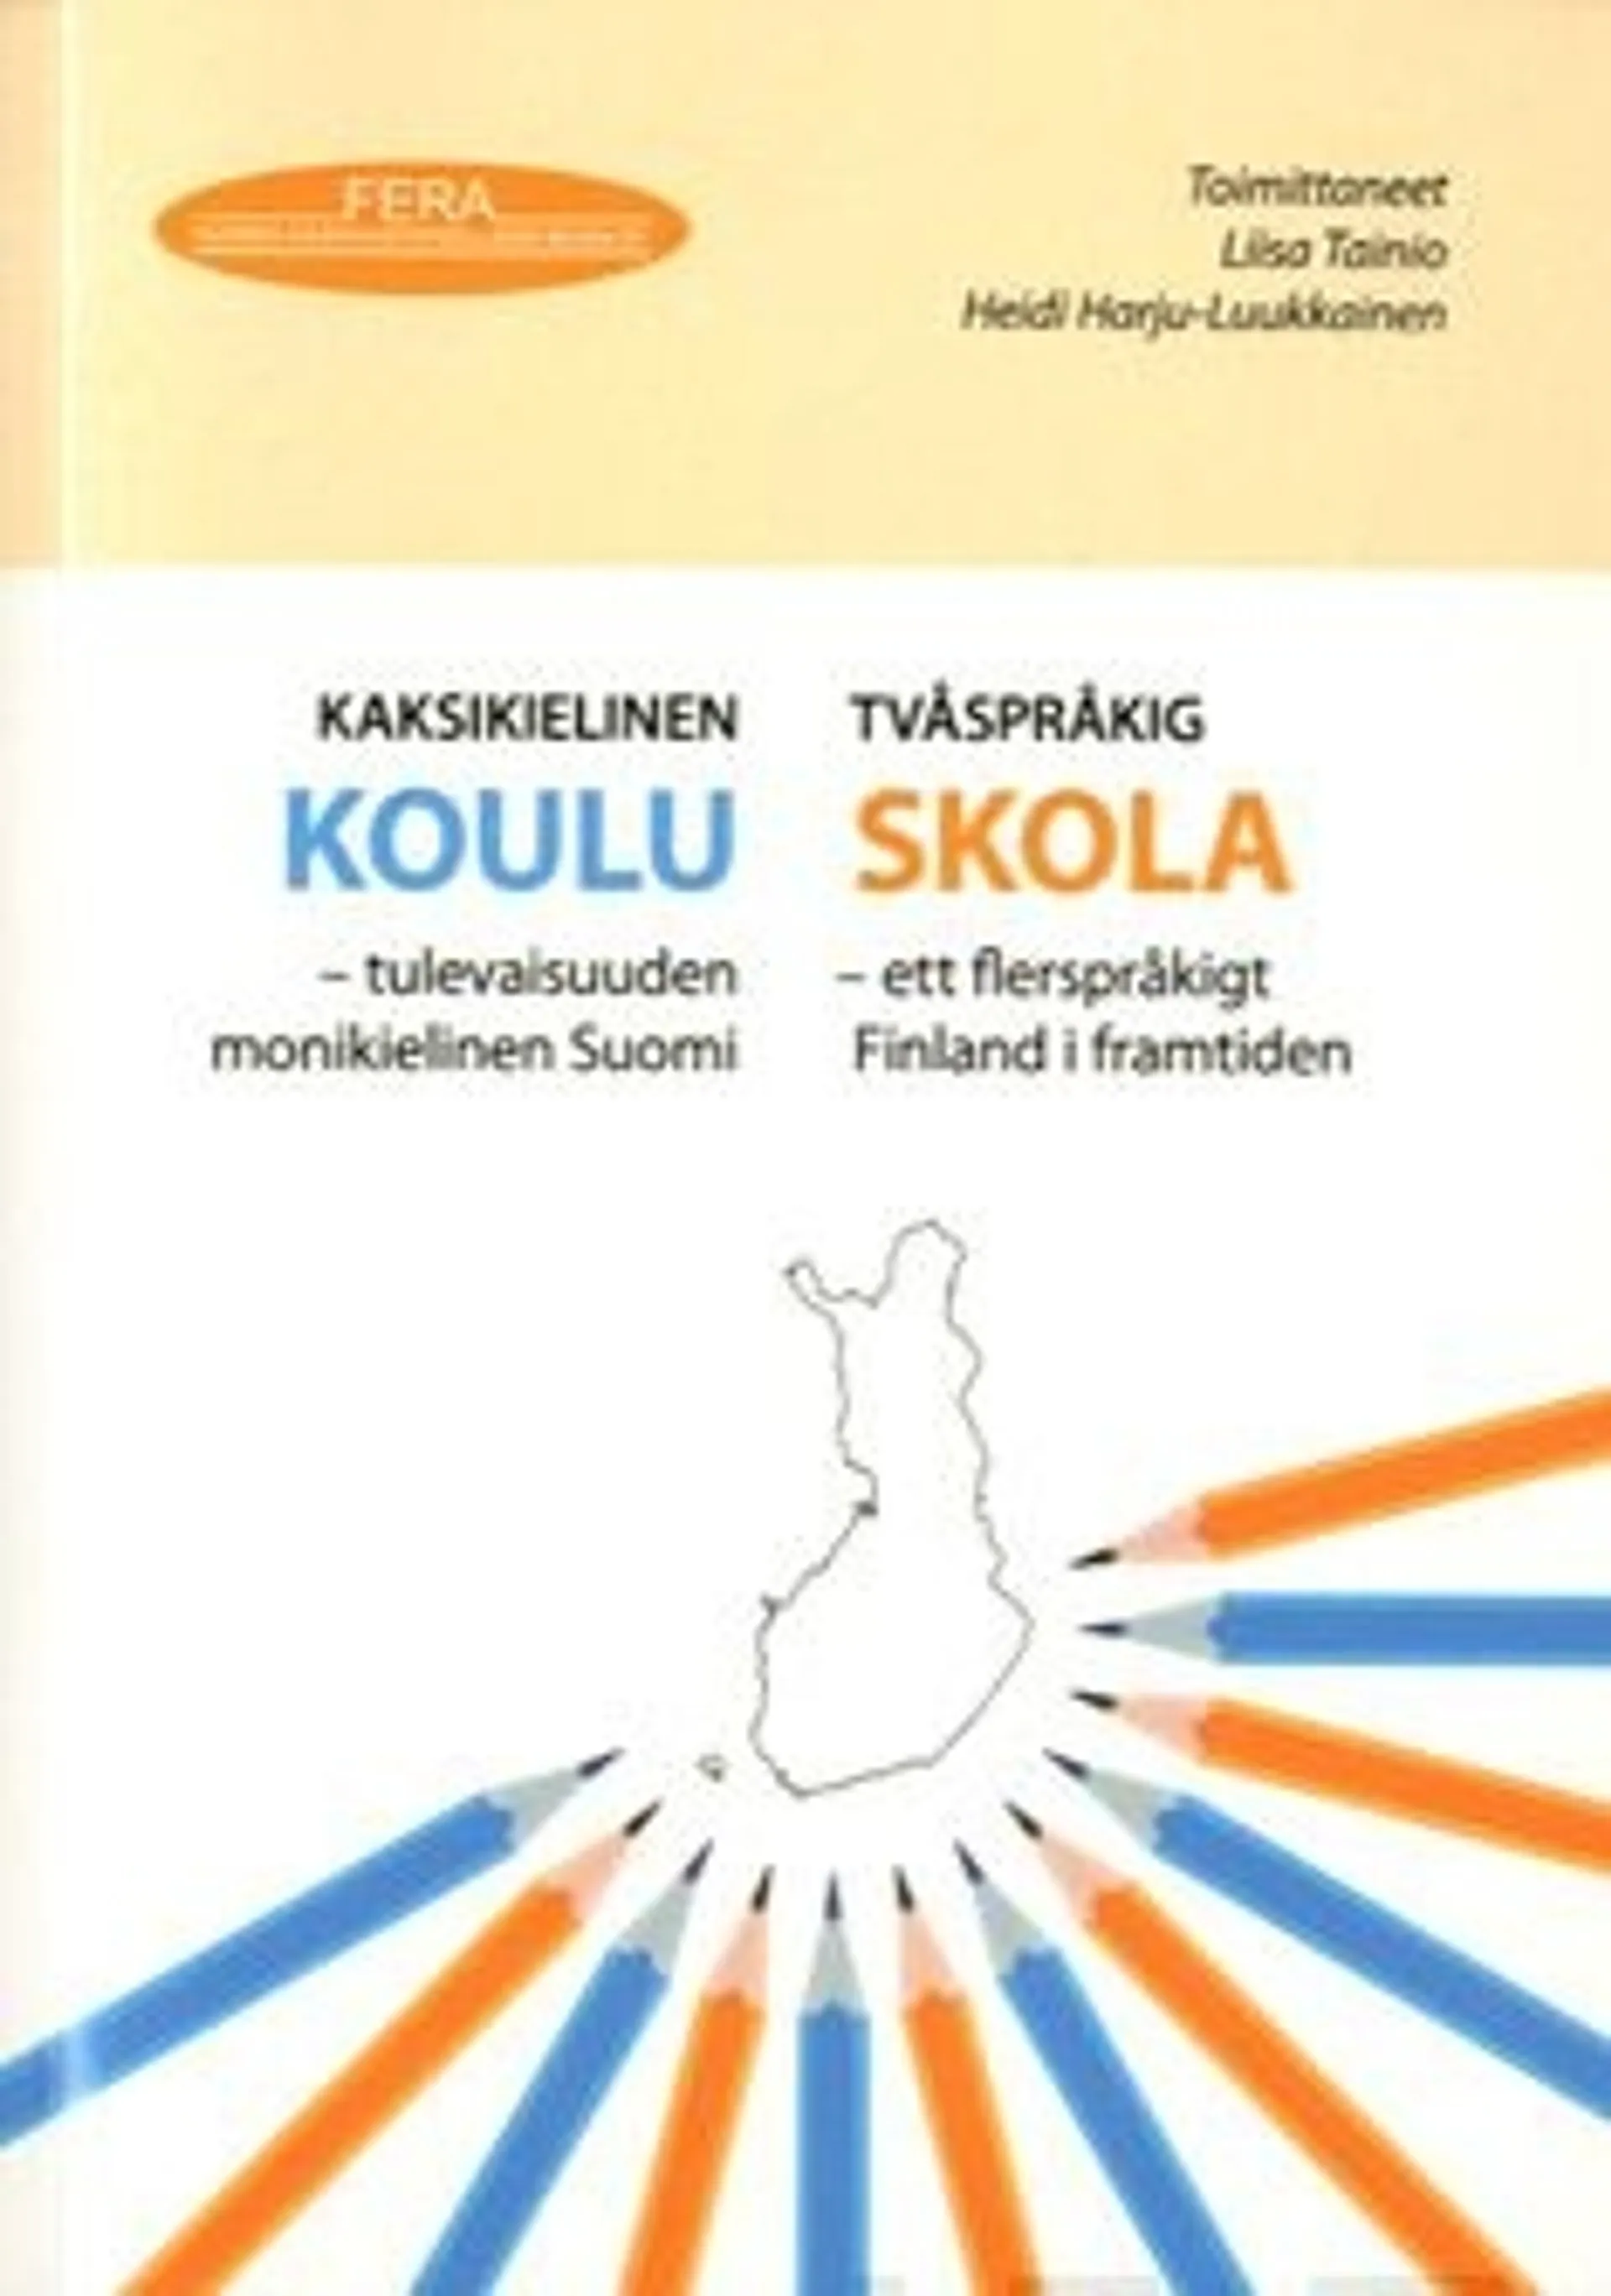 Kaksikielinen koulu - Ett flerspråkigt Finland i framtiden; tulevaisuuden monikielinen Suomi